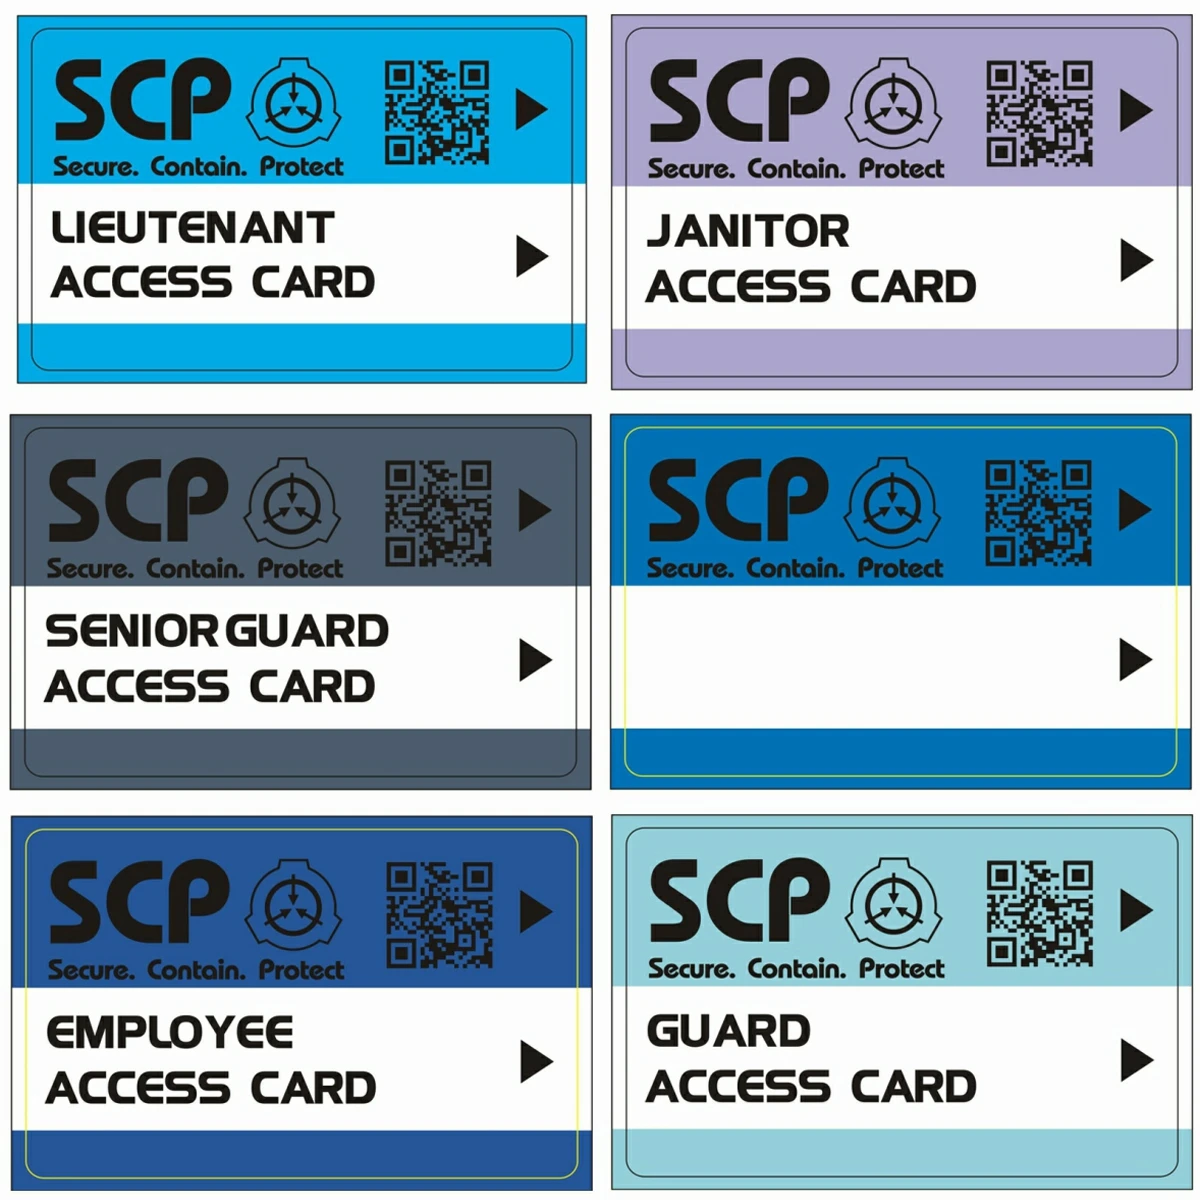 един комплект от 6 теми SCP GUARD, scp secret foundation, карти-ключове, специален лого, cosplay, карта за достъп scp-19